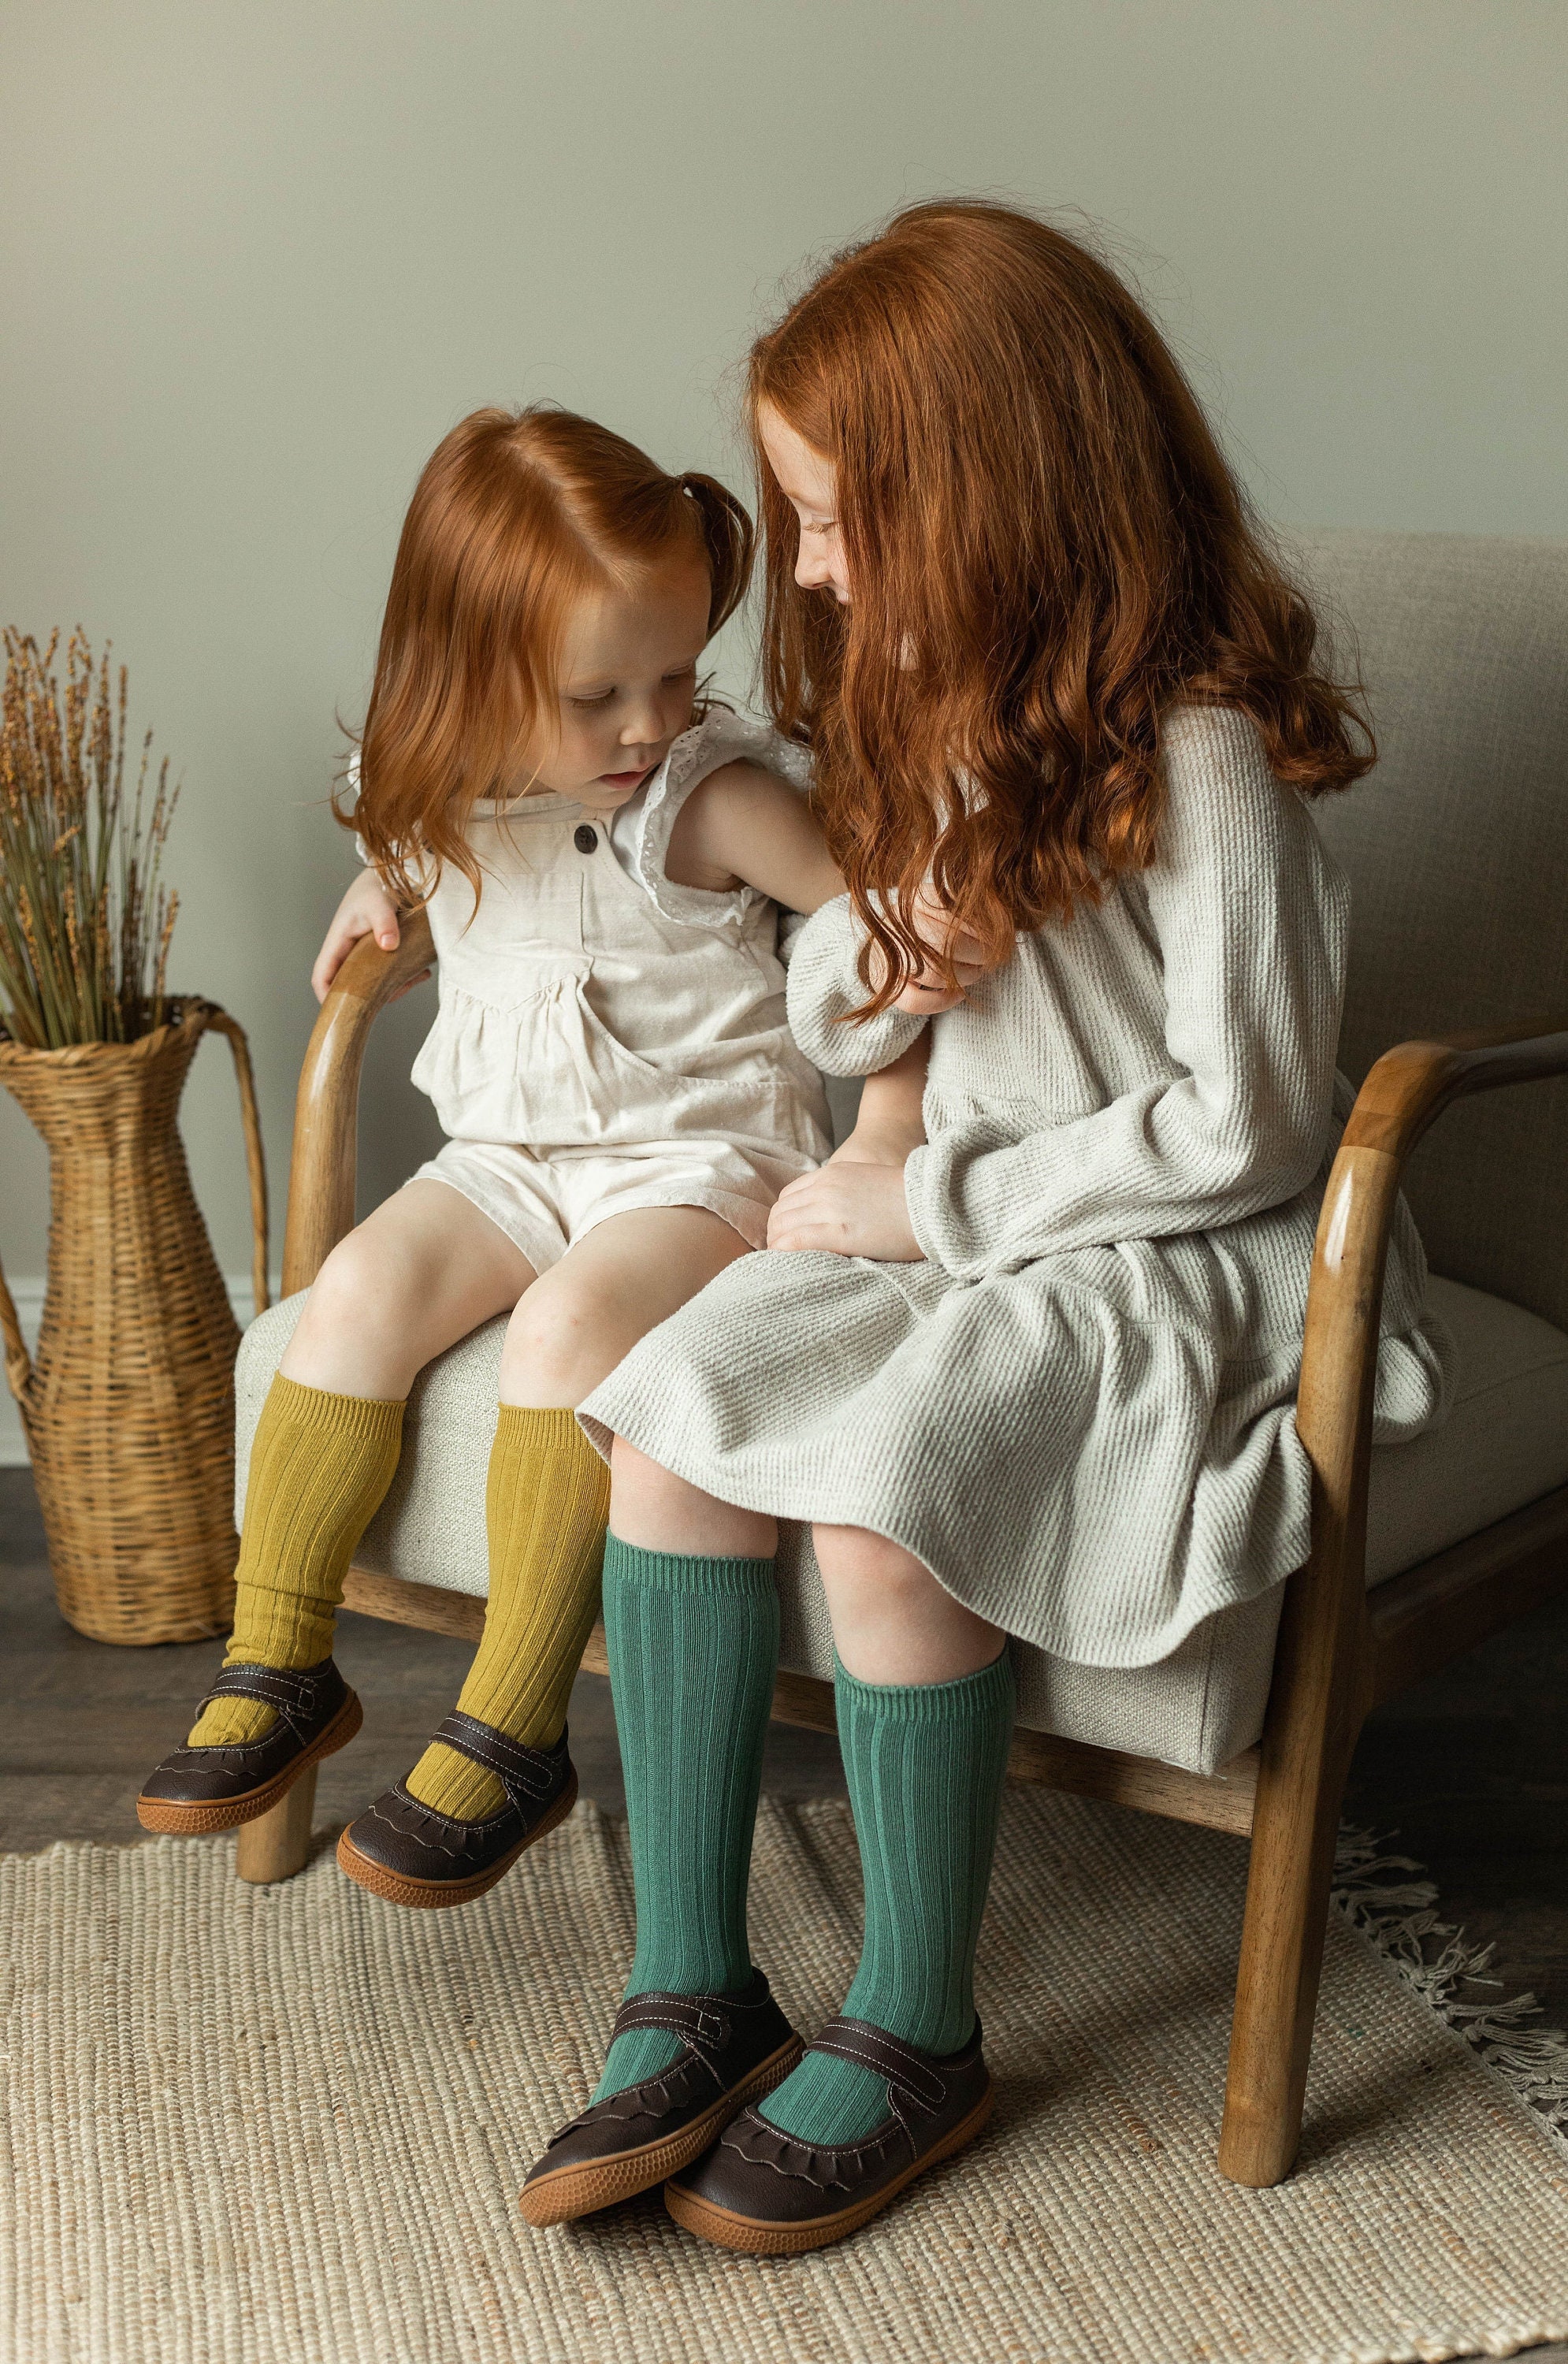 Chaussettes enfant côtelées en coton doux - Violet | Doré Doré